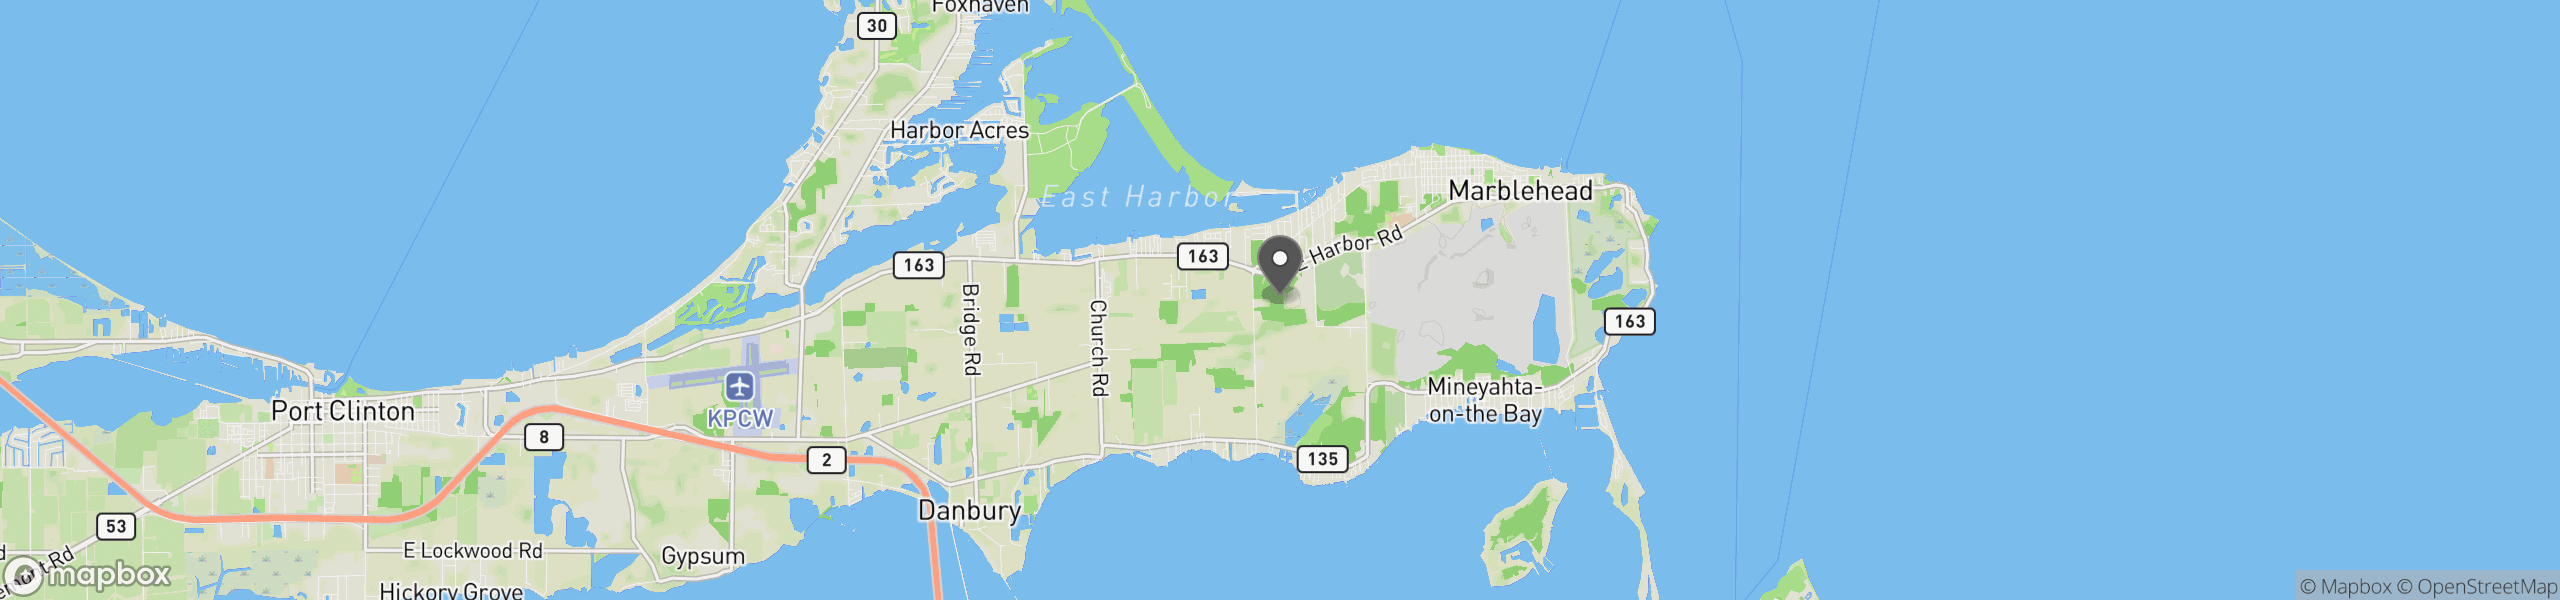 Lakeside Marblehead, OH 43440